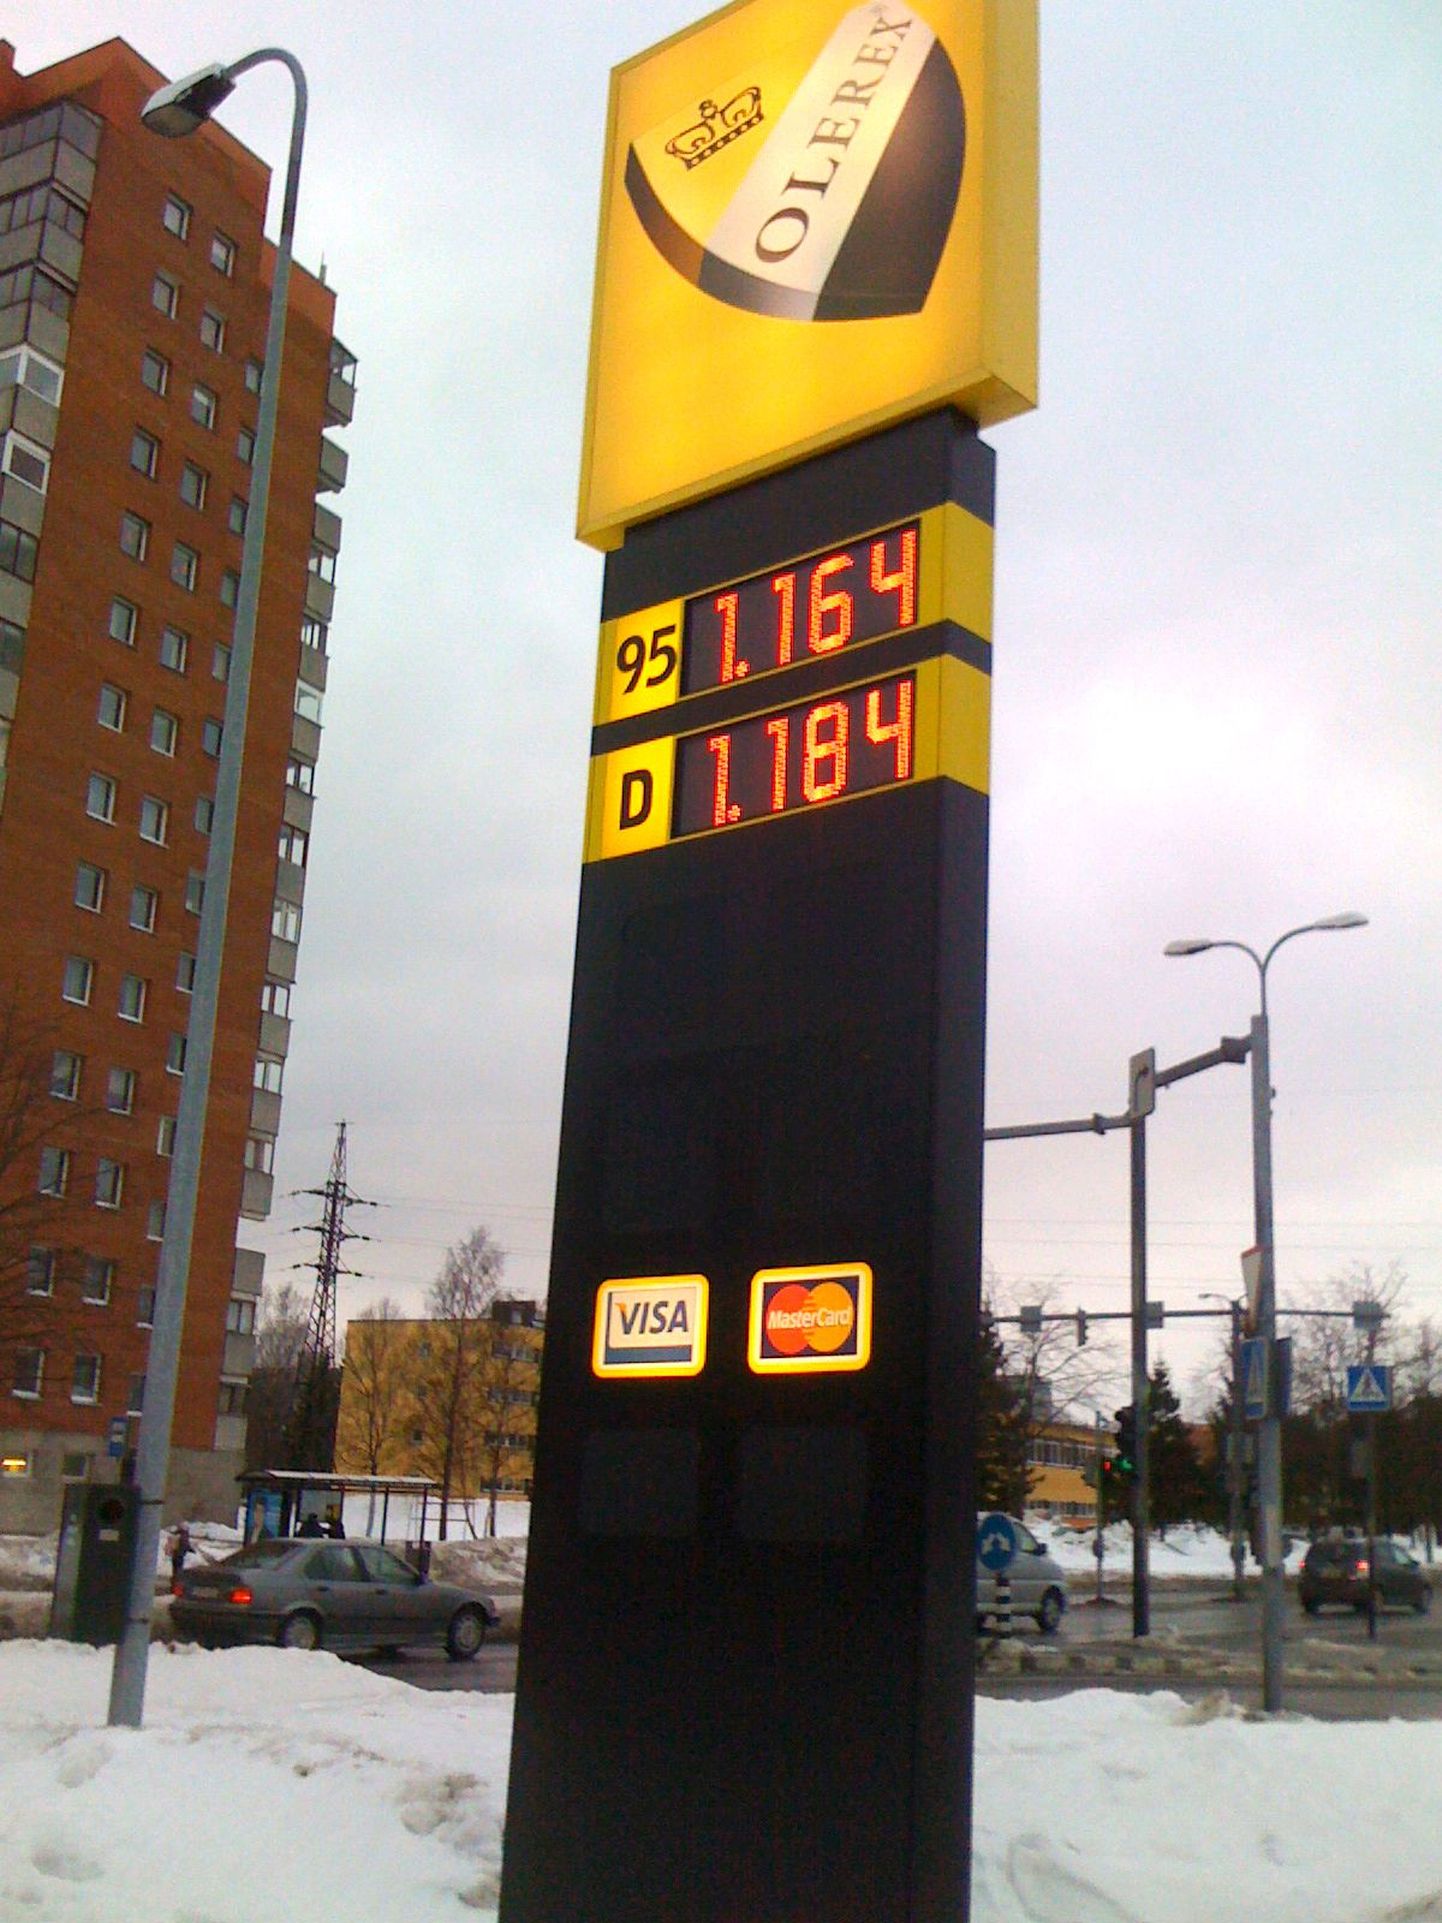 Цена на бензин. Снимок иллюстративный.